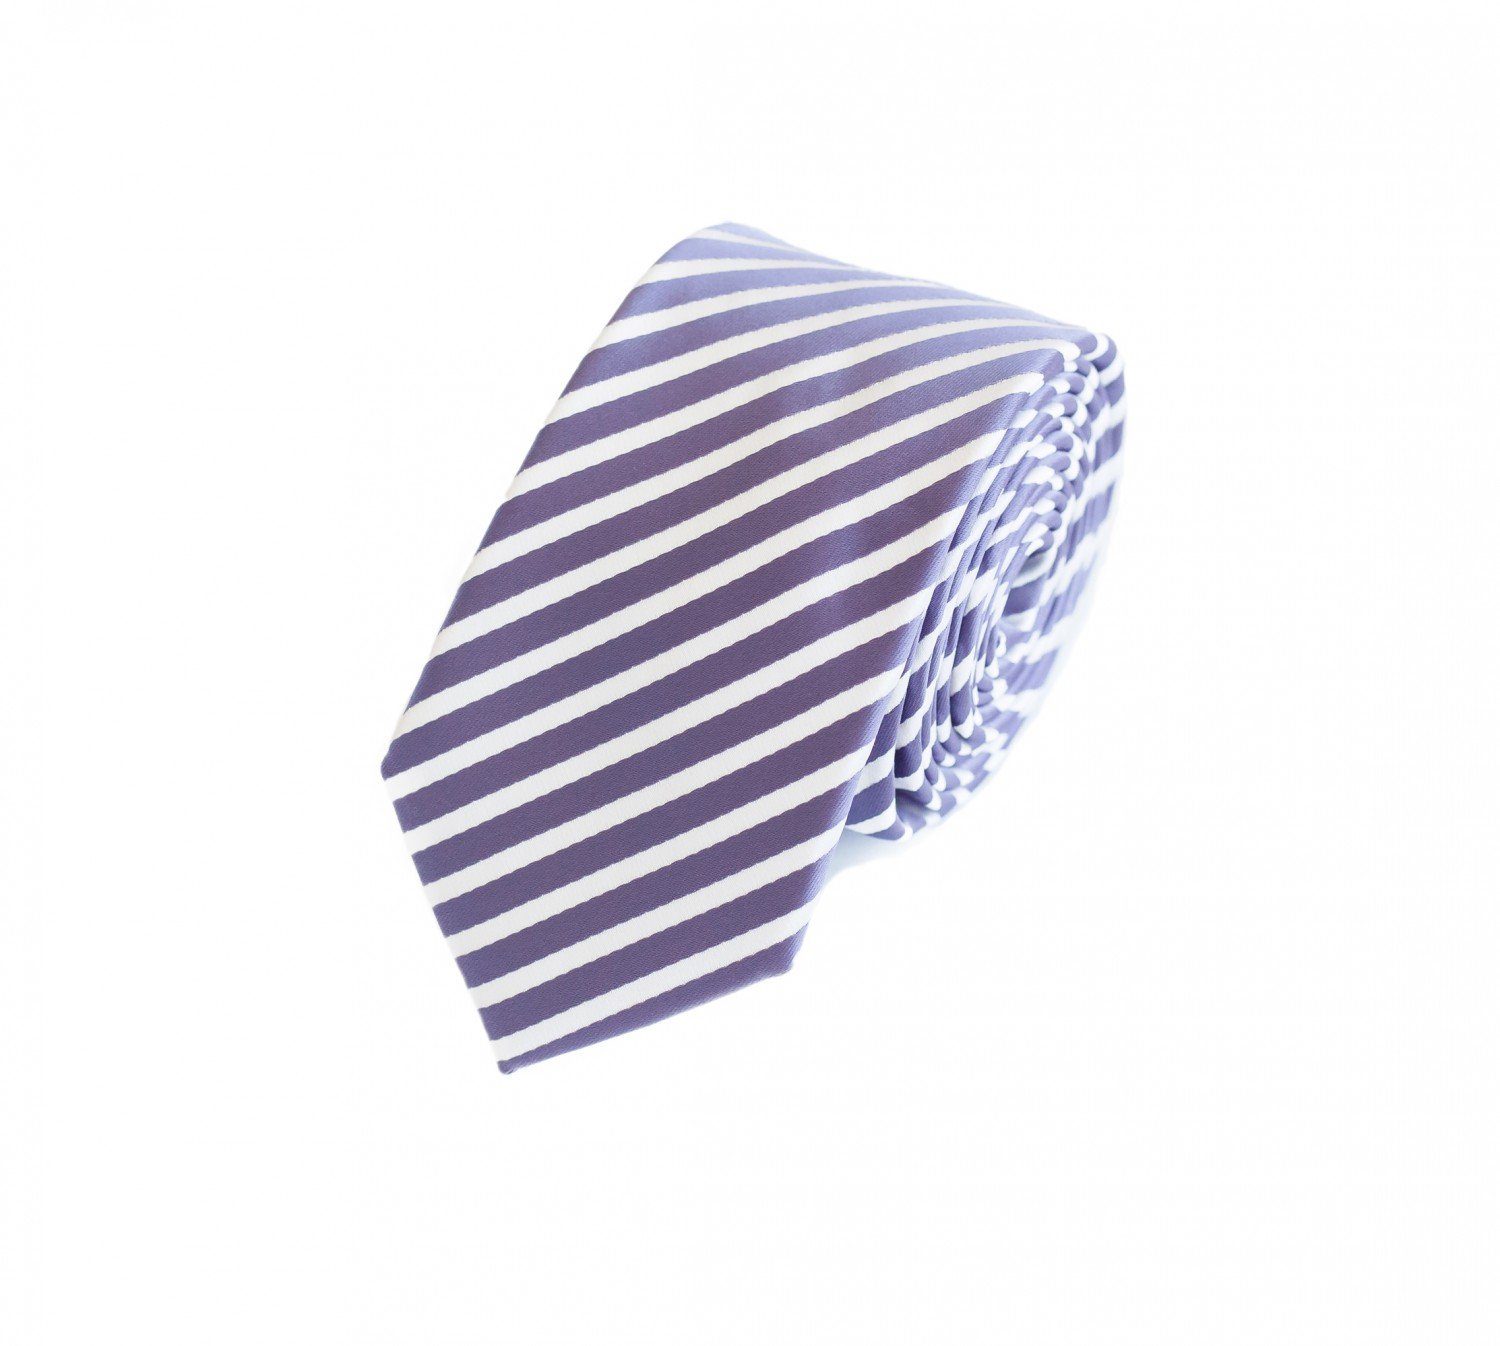 verschiedene Fabio Lila Farini - 6cm Box, Männer Schmal Krawatte - in Herren Purple/White Weiß Gestreift) Lila Lila (ohne (6cm), Schlips Plump Krawatte